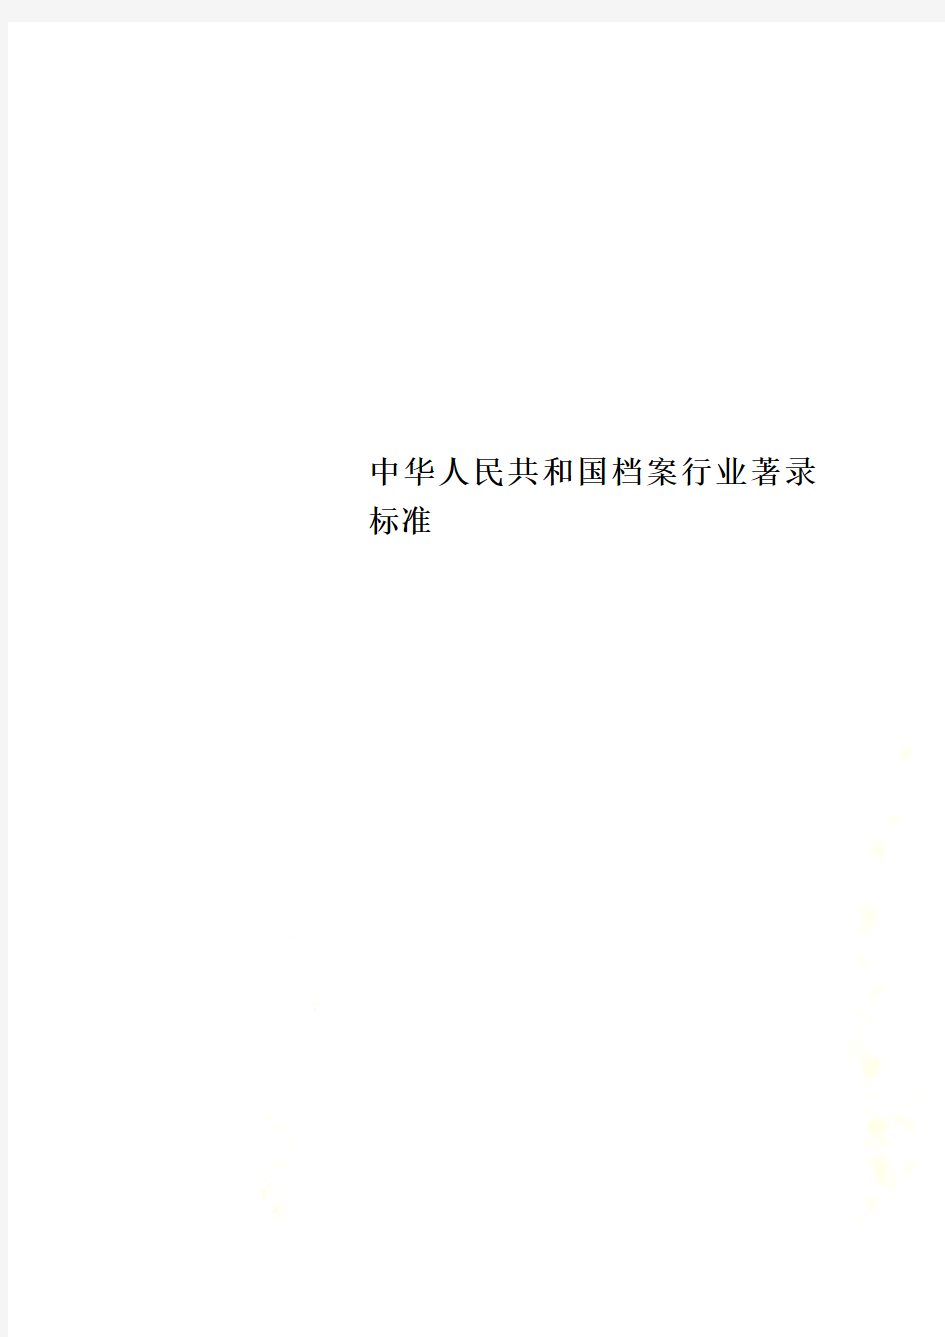 中华人民共和国档案行业著录标准